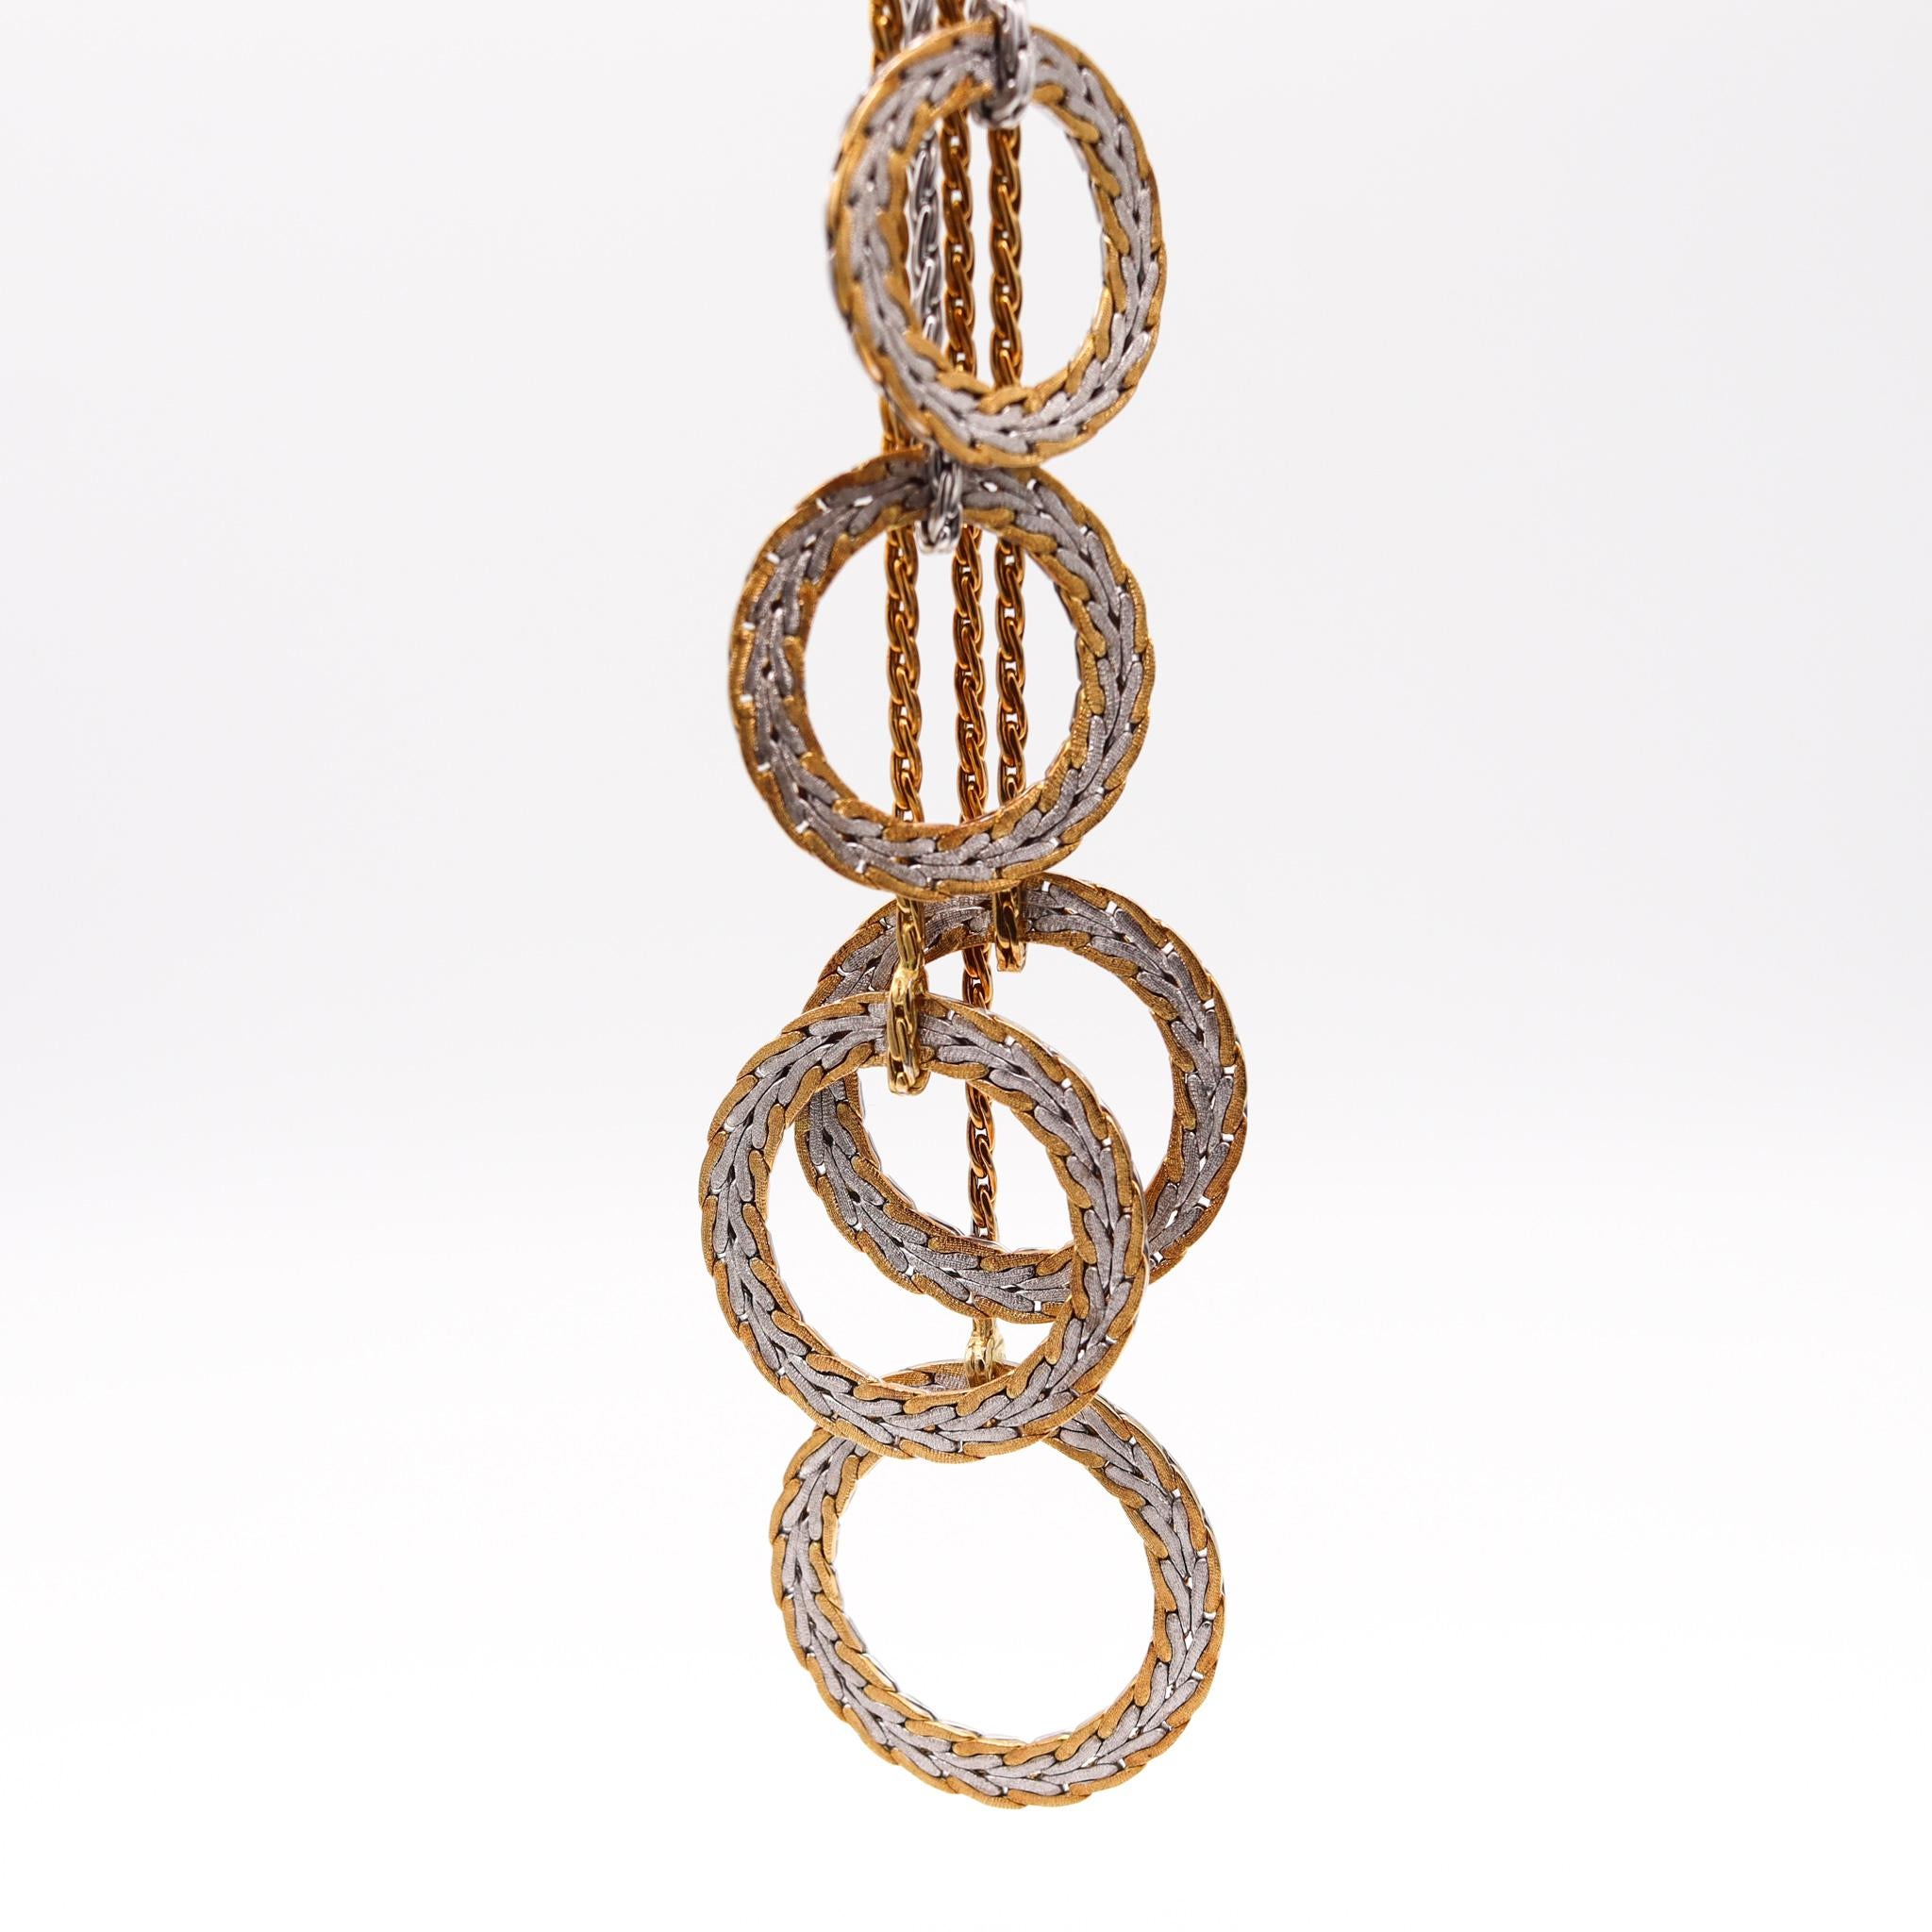 Collier en forme de lasso créé par Gianmaria Buccellati.

Magnifique pièce bicolore, créée à Milan, en Italie, par la maison de joaillerie emblématique de Buccellati. Ce collier lariat a été réalisé en or jaune et blanc massif de 18 carats. Il est